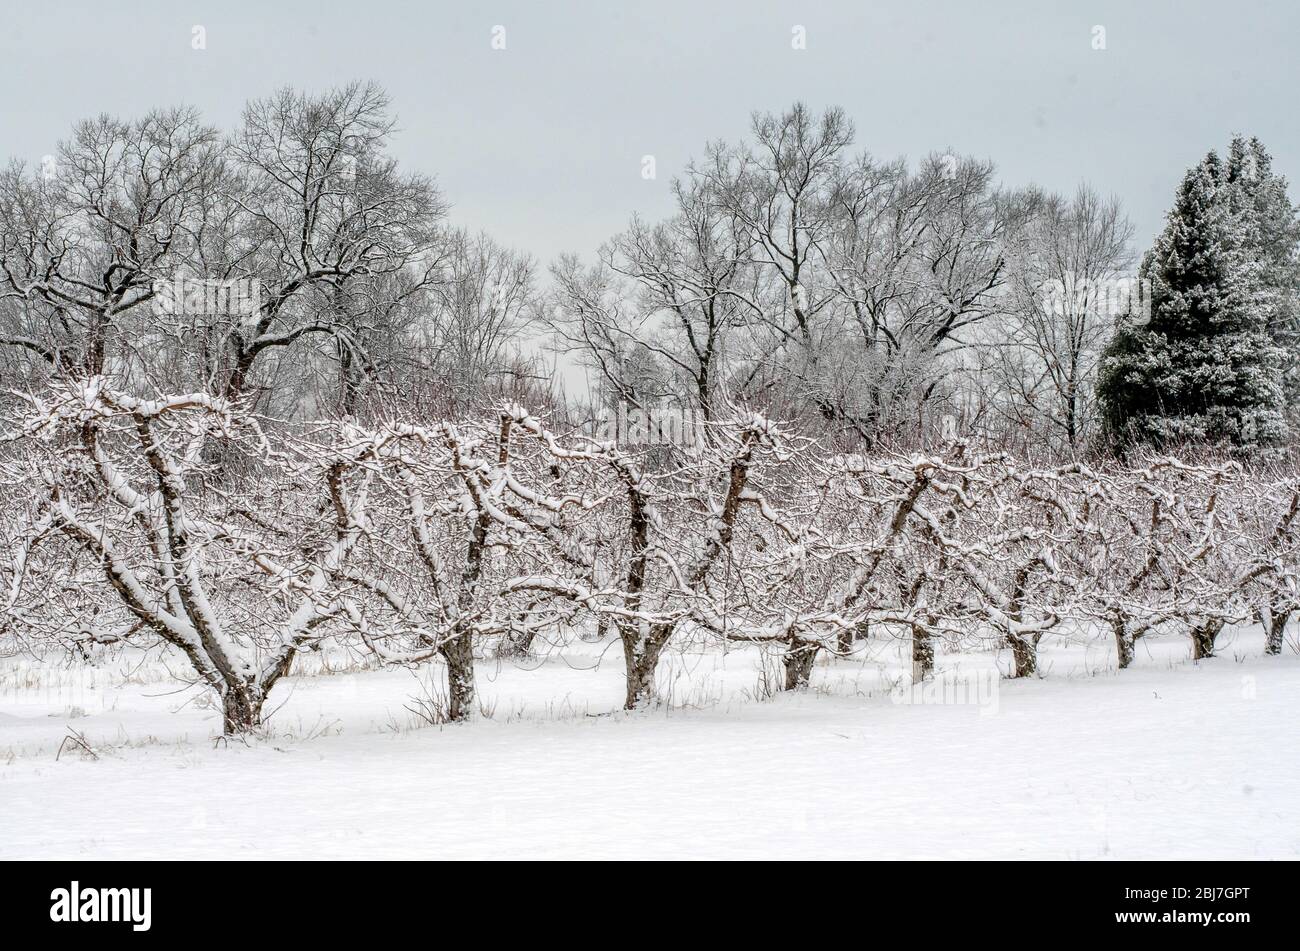 Une rangée de fruits en herbe est recouverte d'une neige printanière au Michigan, aux États-Unis Banque D'Images